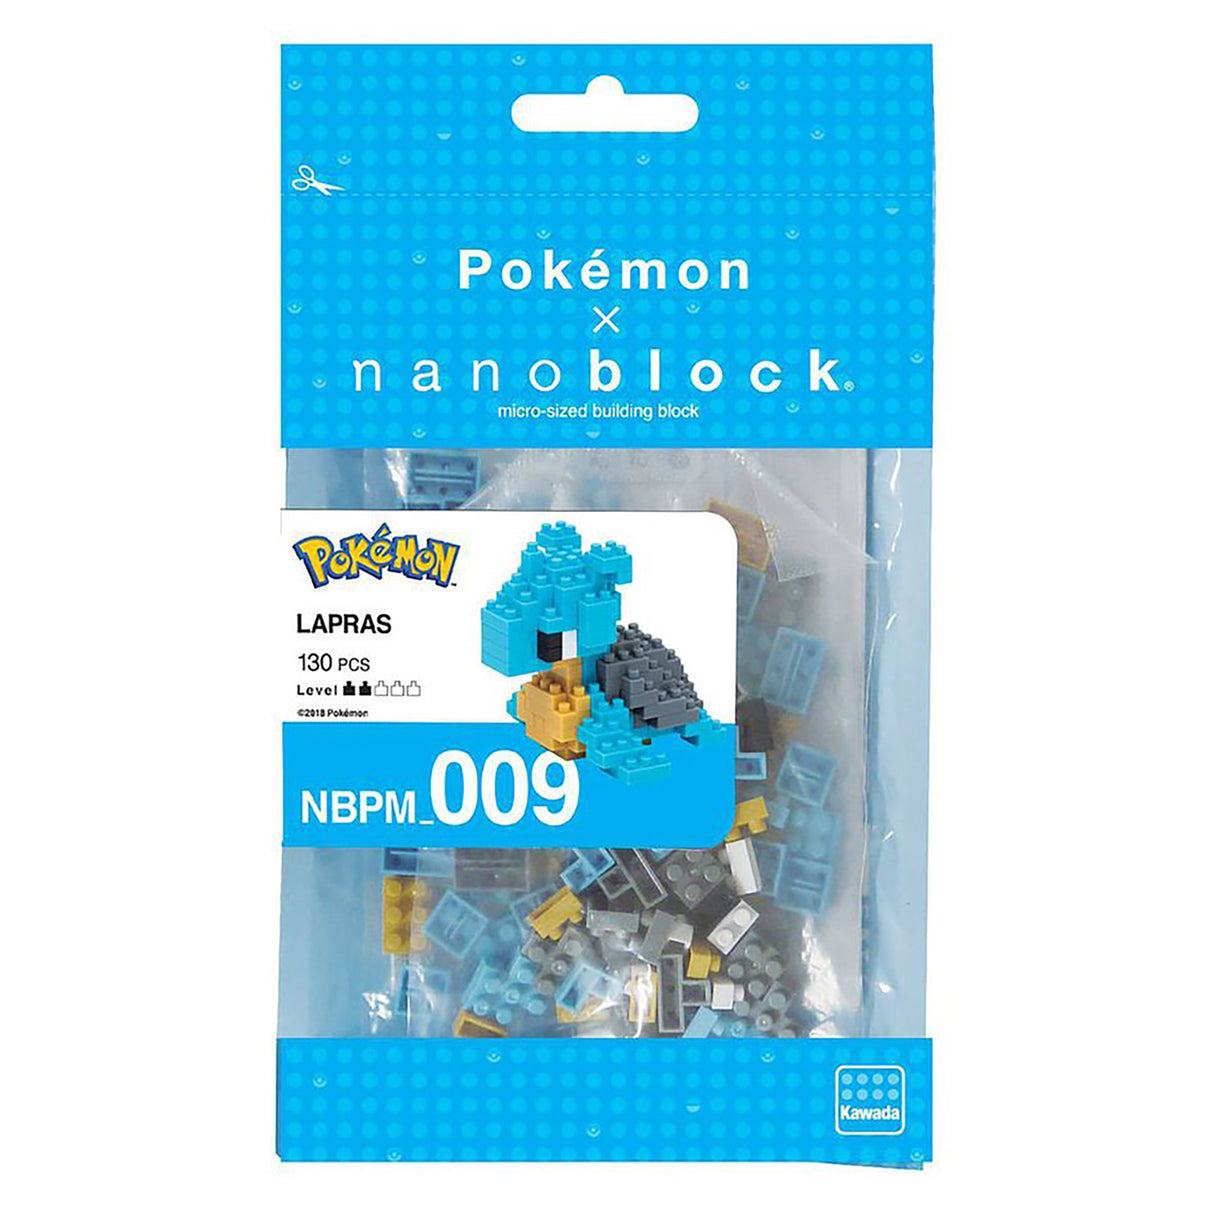 nanoblock x Pokemon Lapras (130 pieces)